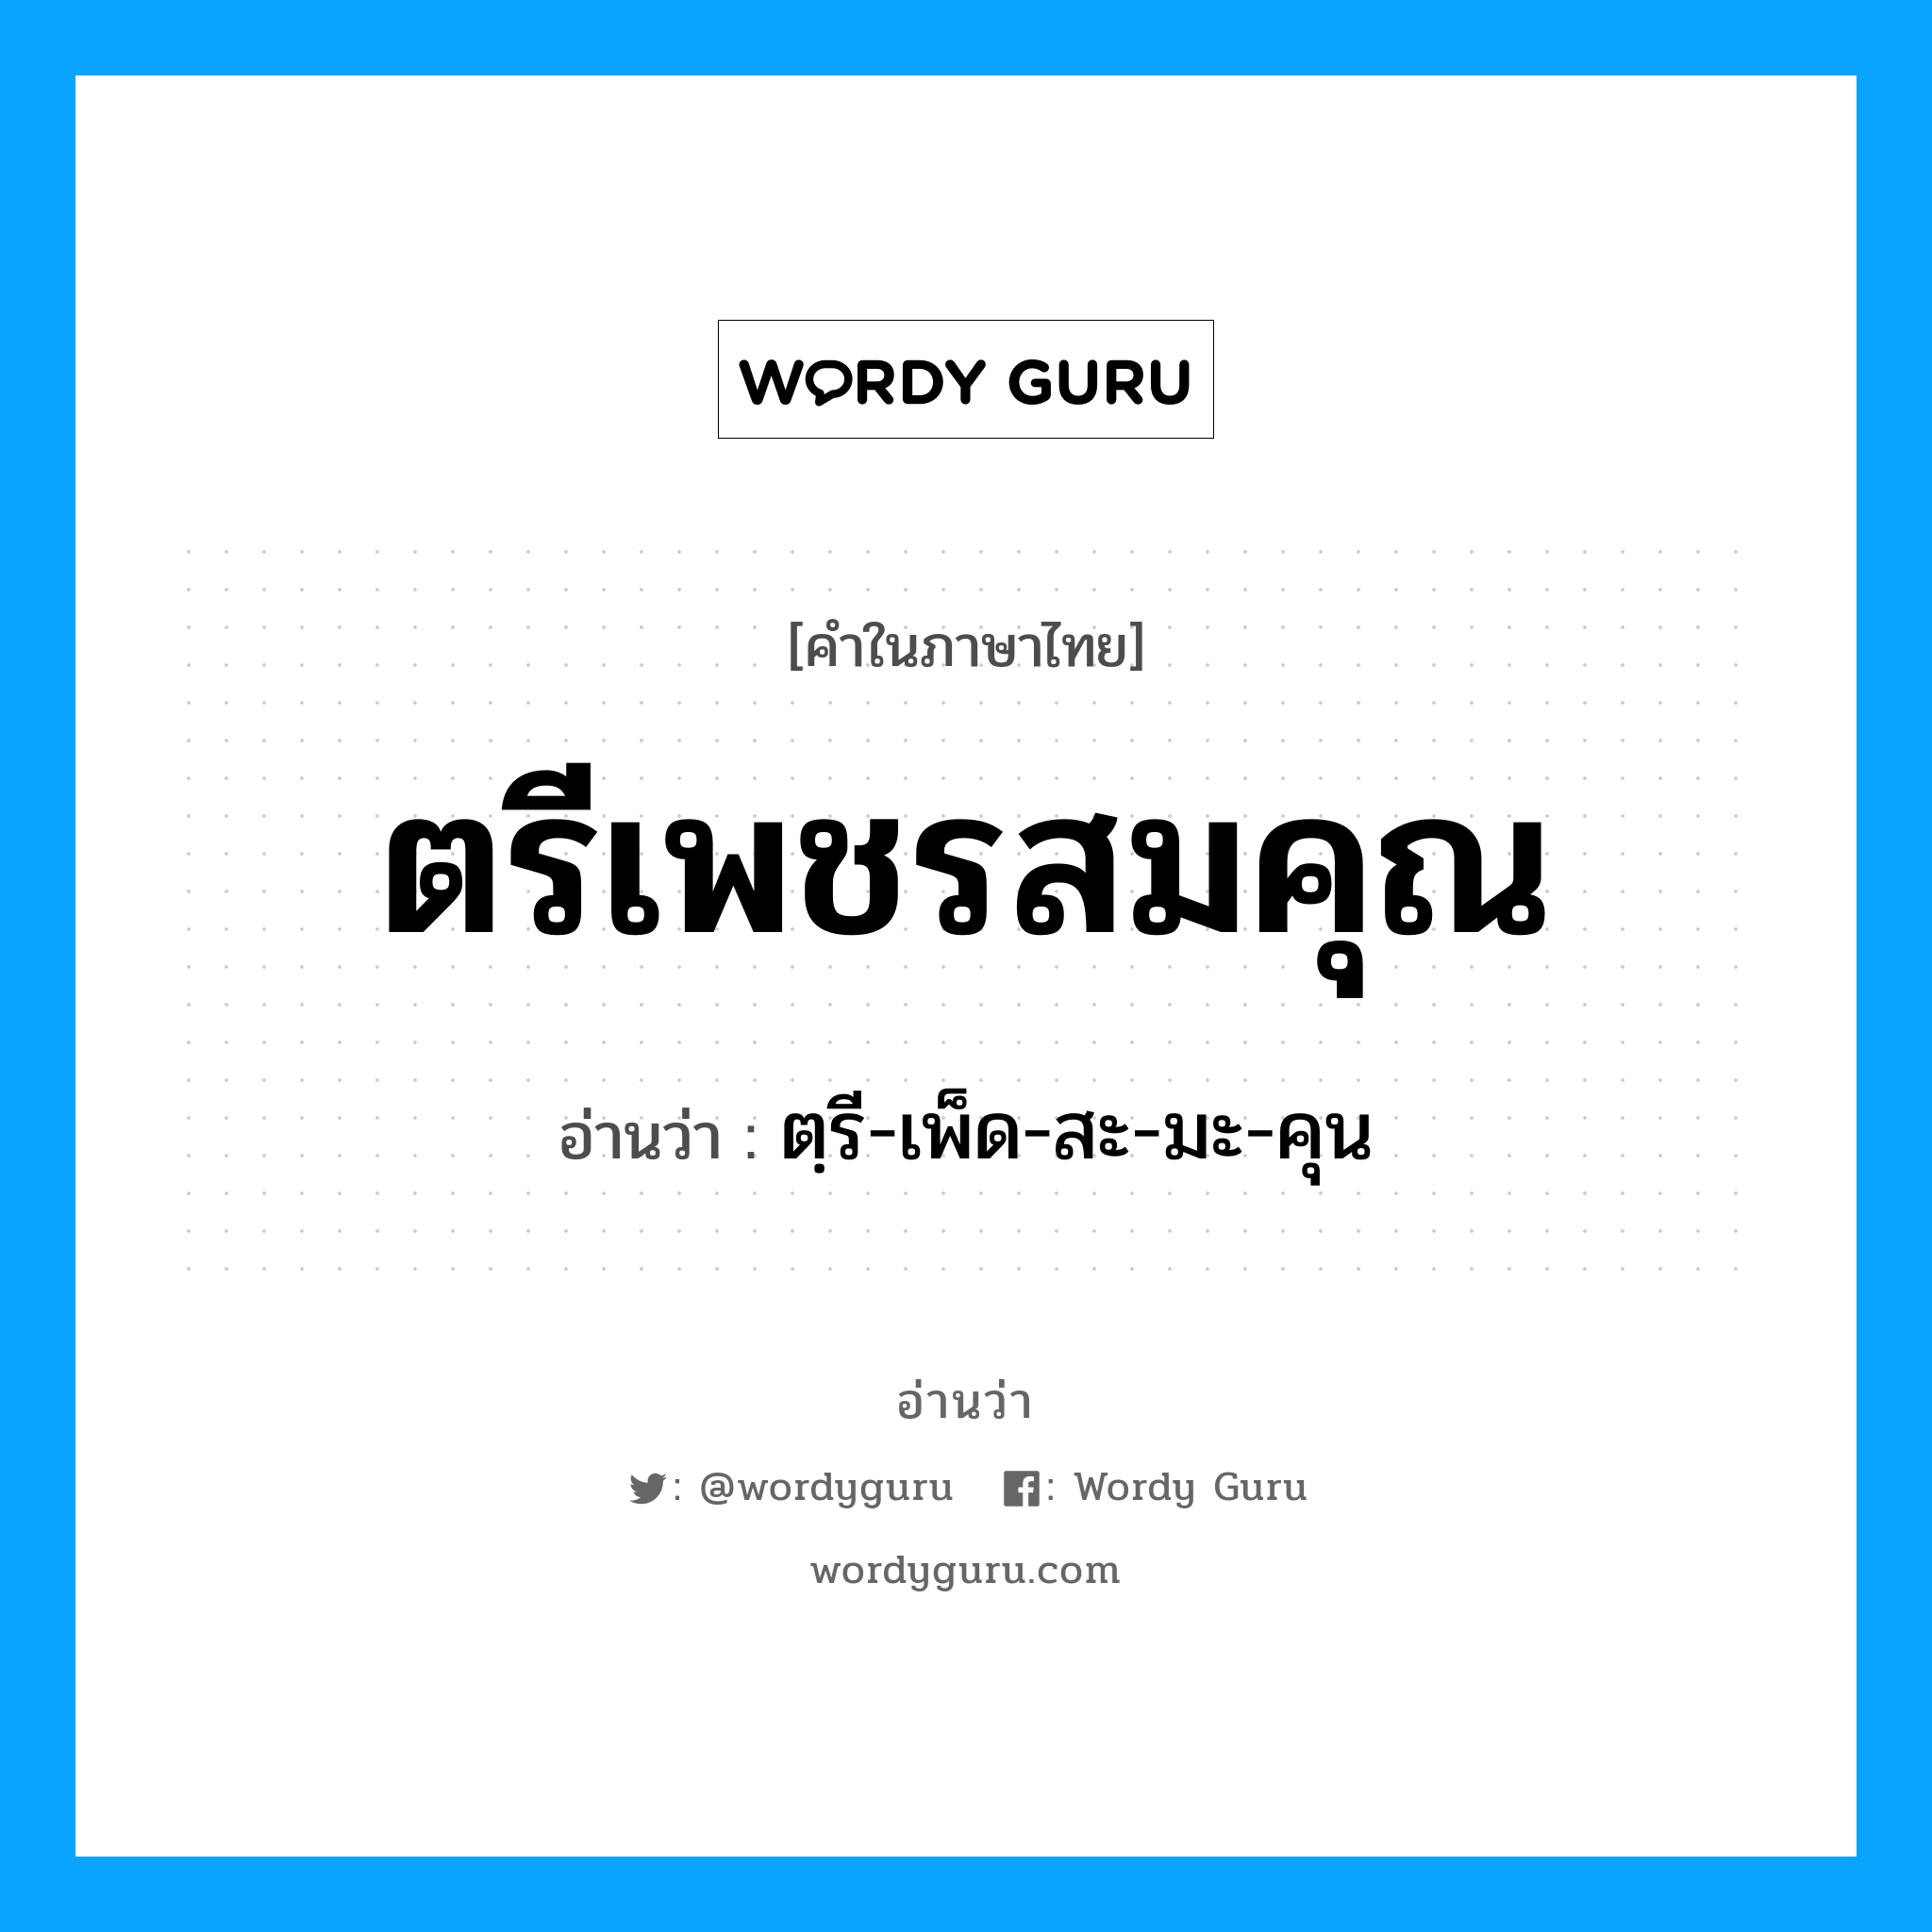 ตฺรี-เพ็ด-สะ-มะ-คุน เป็นคำอ่านของคำไหน?, คำในภาษาไทย ตฺรี-เพ็ด-สะ-มะ-คุน อ่านว่า ตรีเพชรสมคุณ